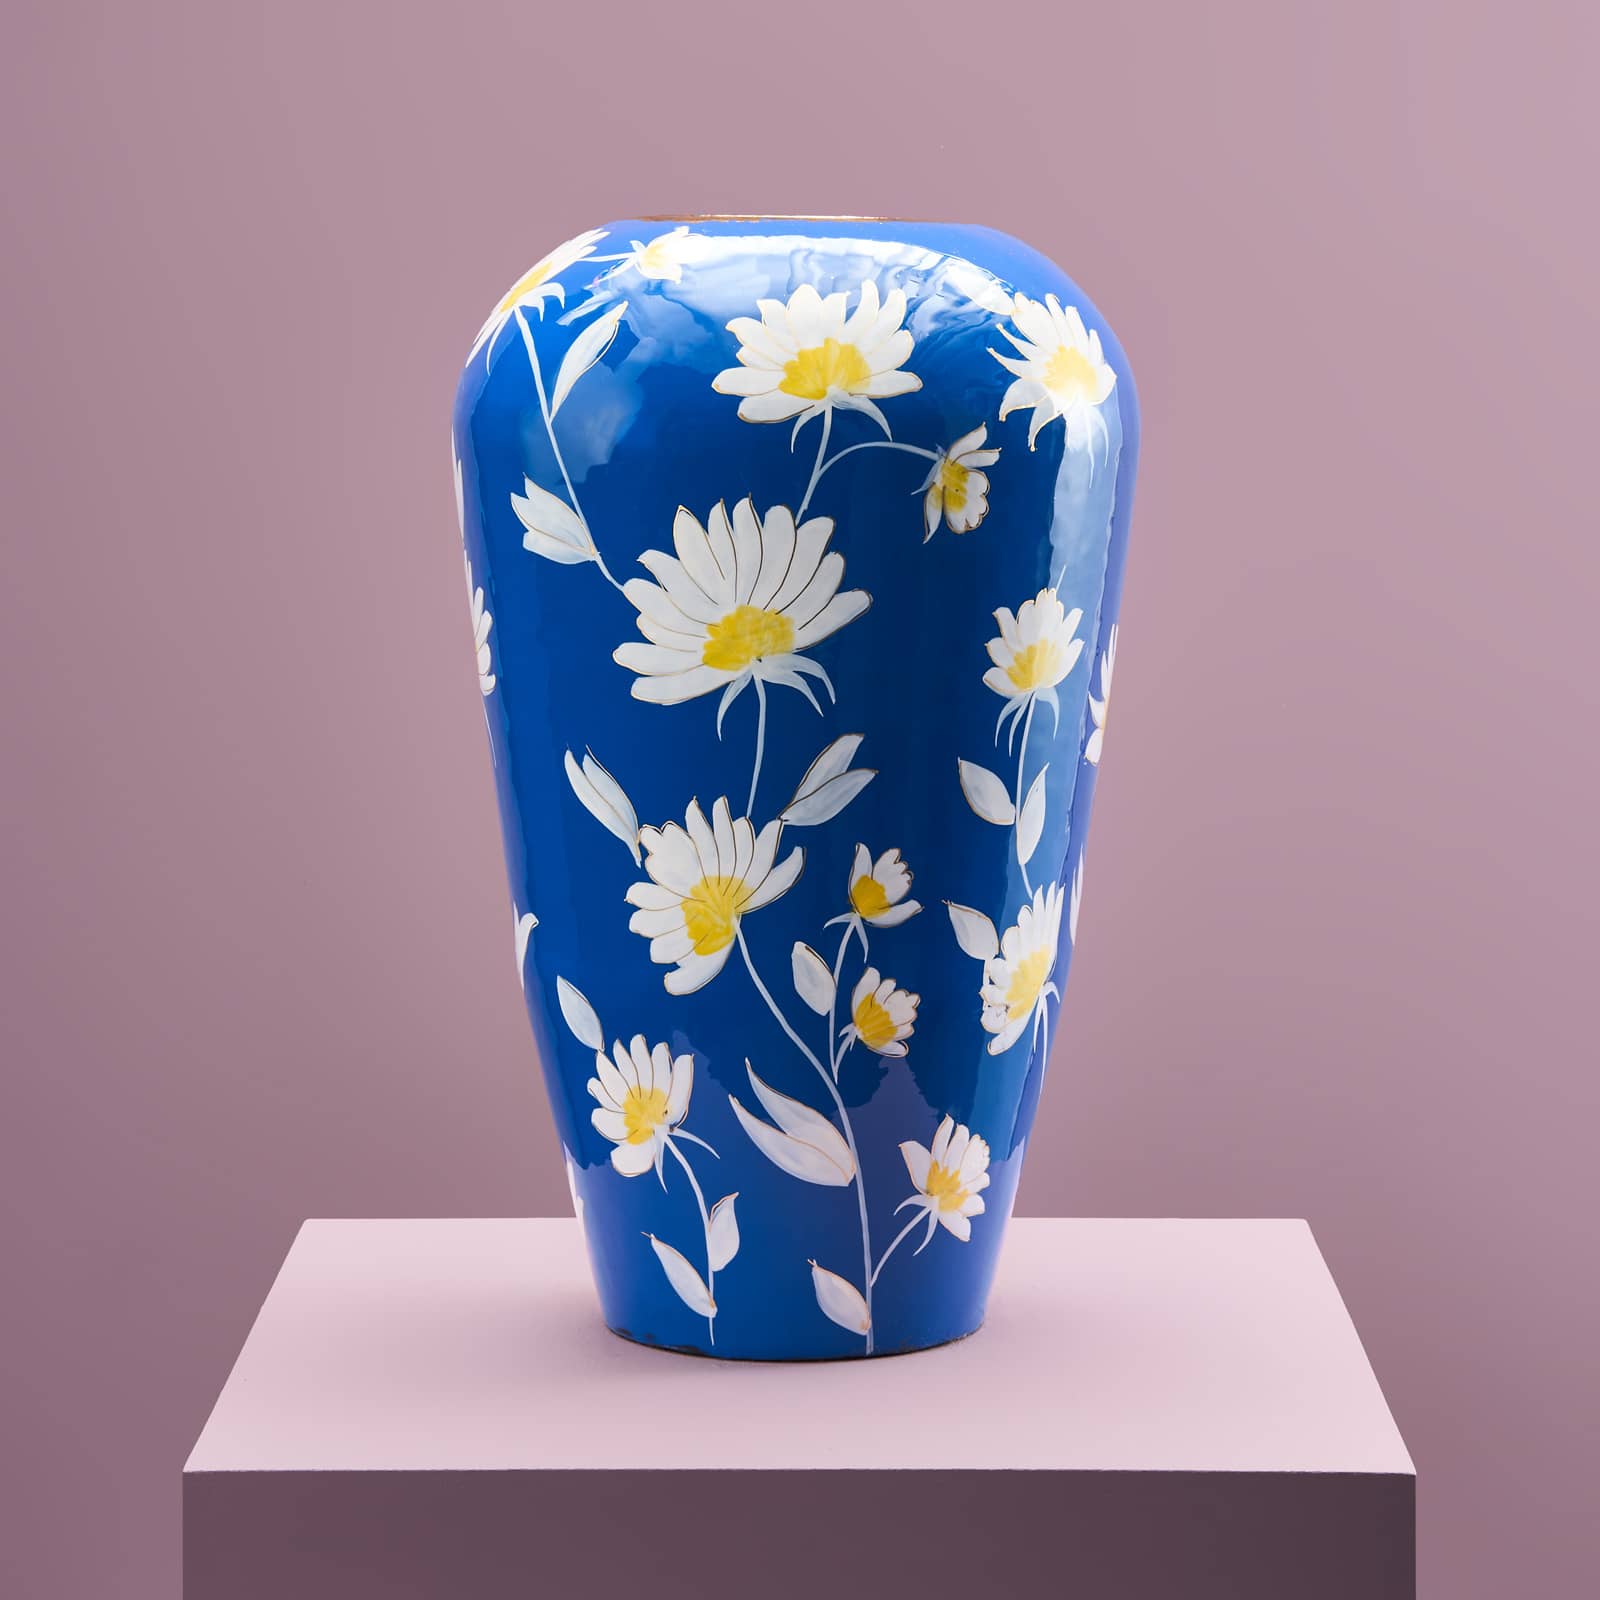 Vase Margarita L, blue